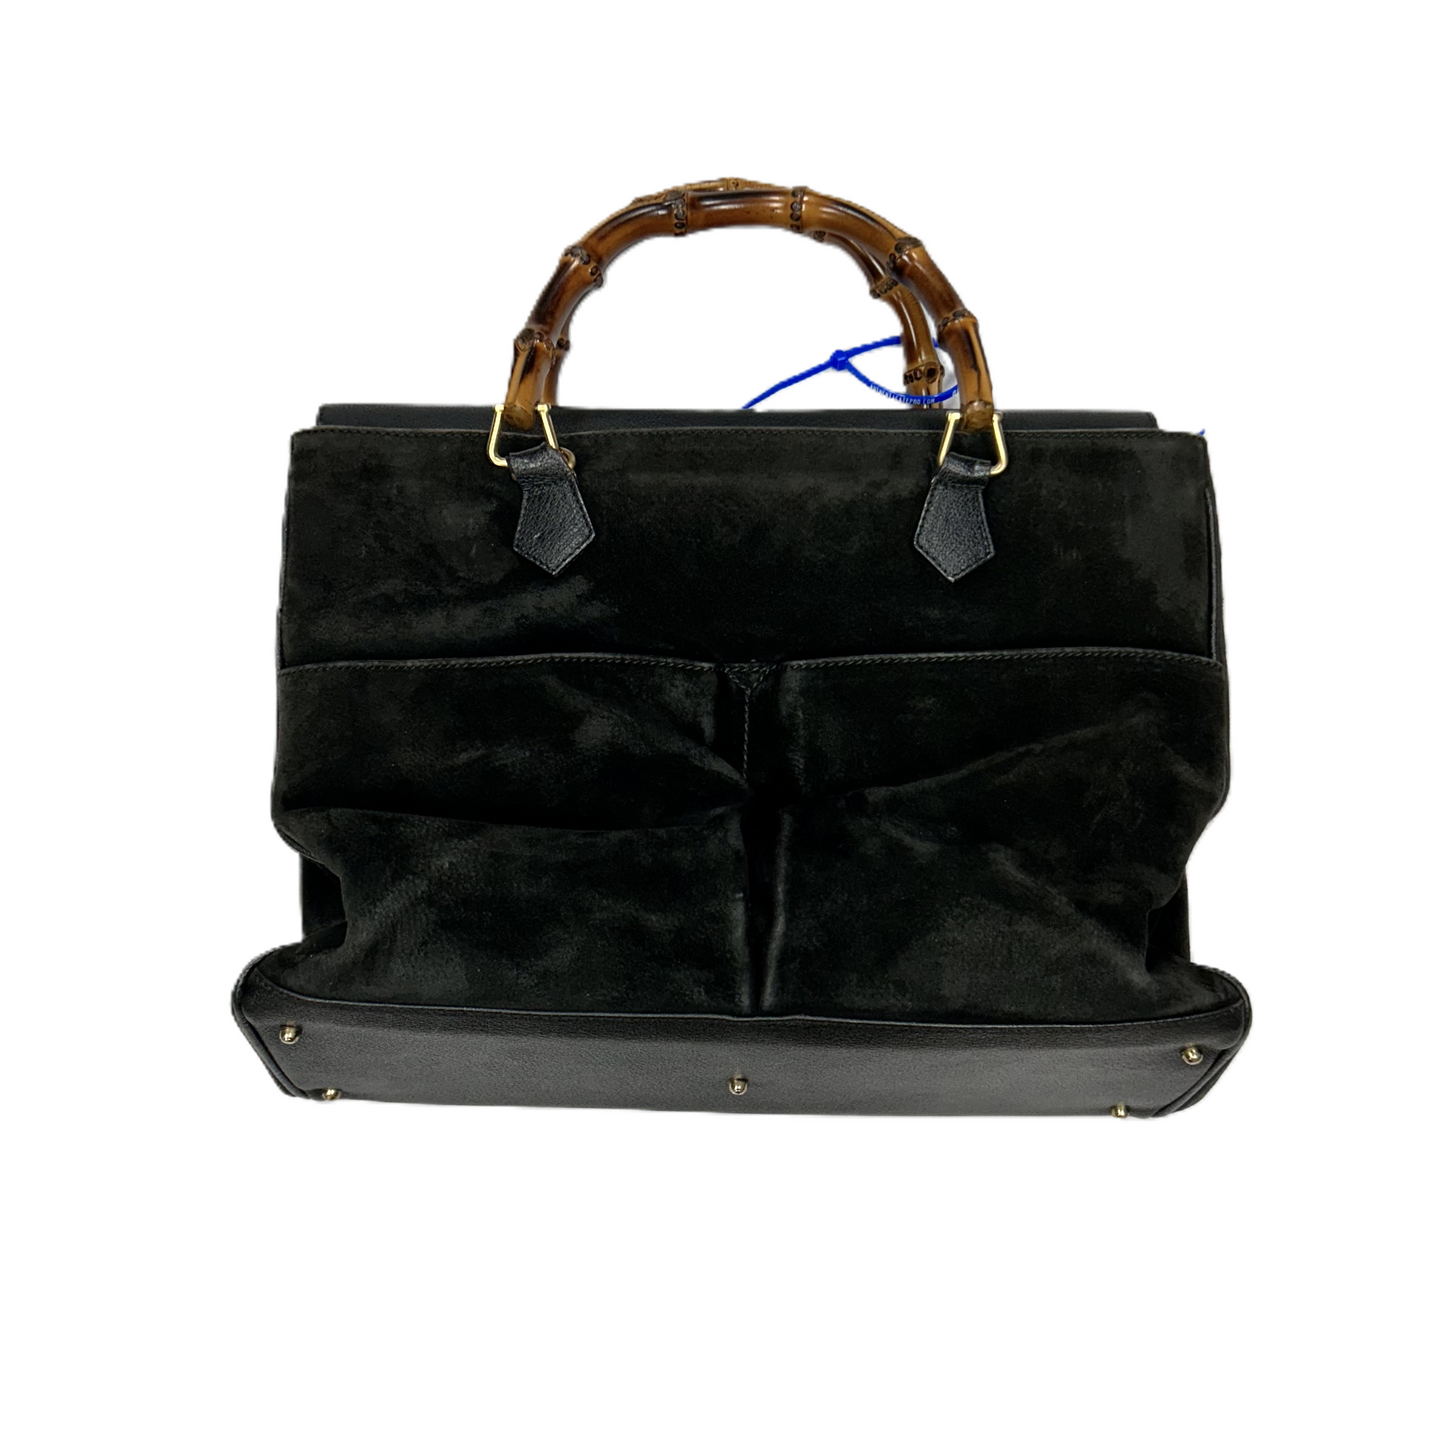 Handbag Designer By Gucci, Size: Medium